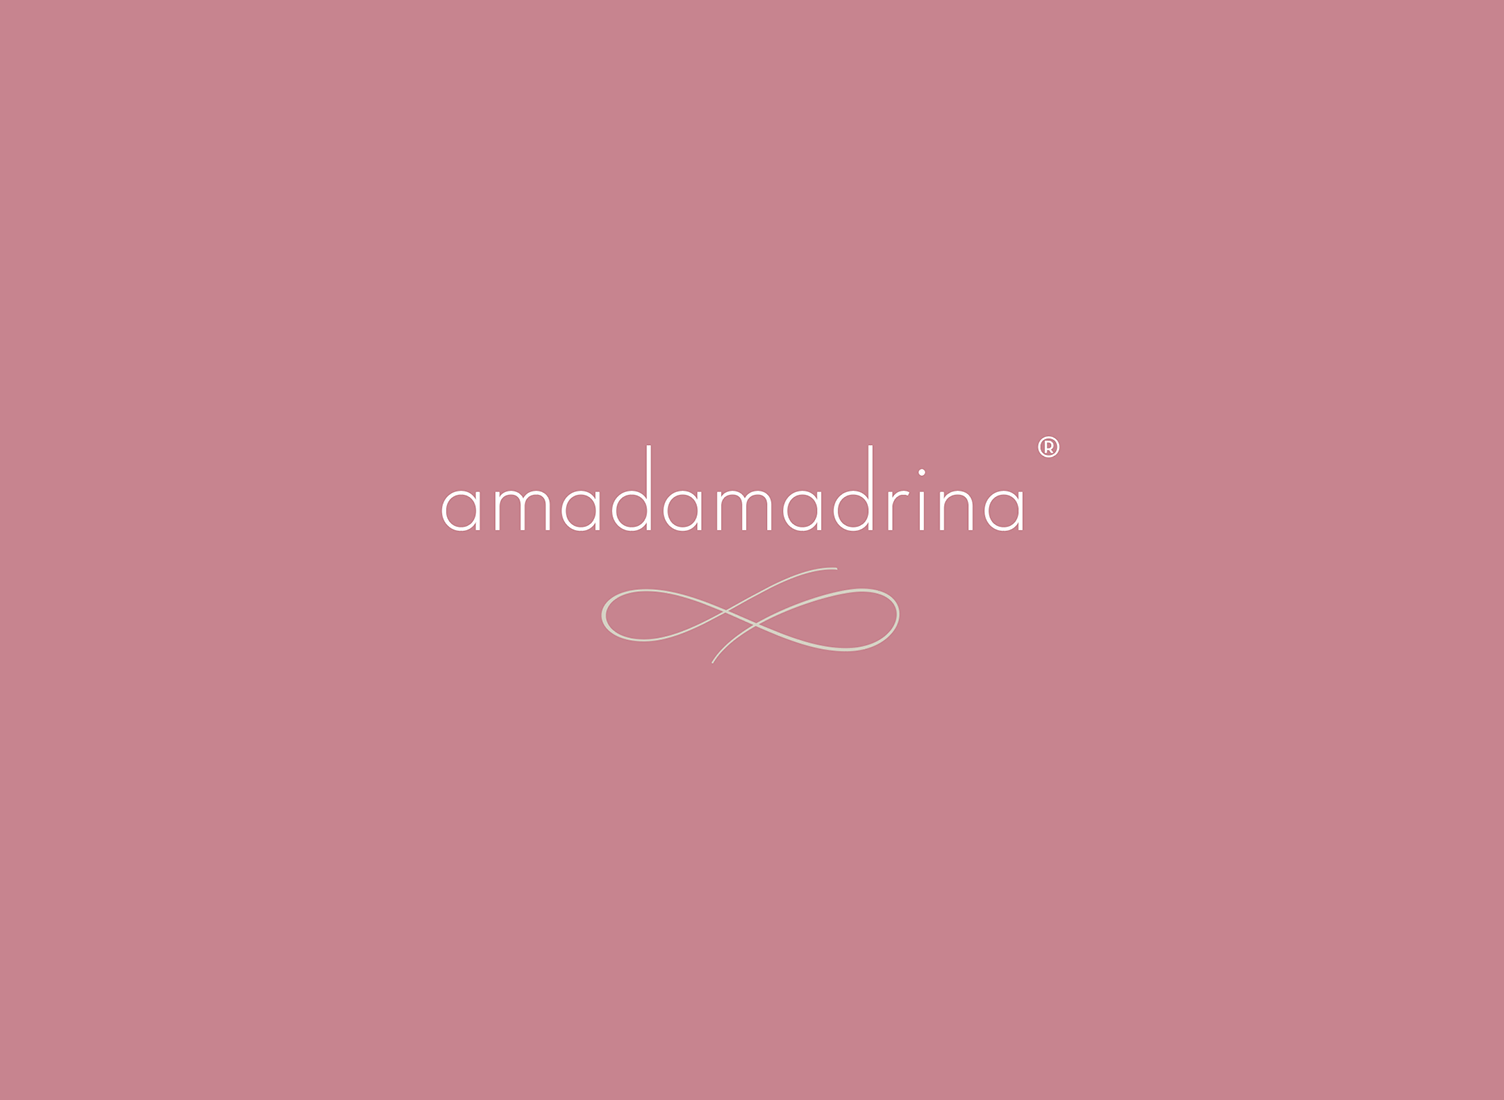 Diseño de logotipo amadamadrina color invertido